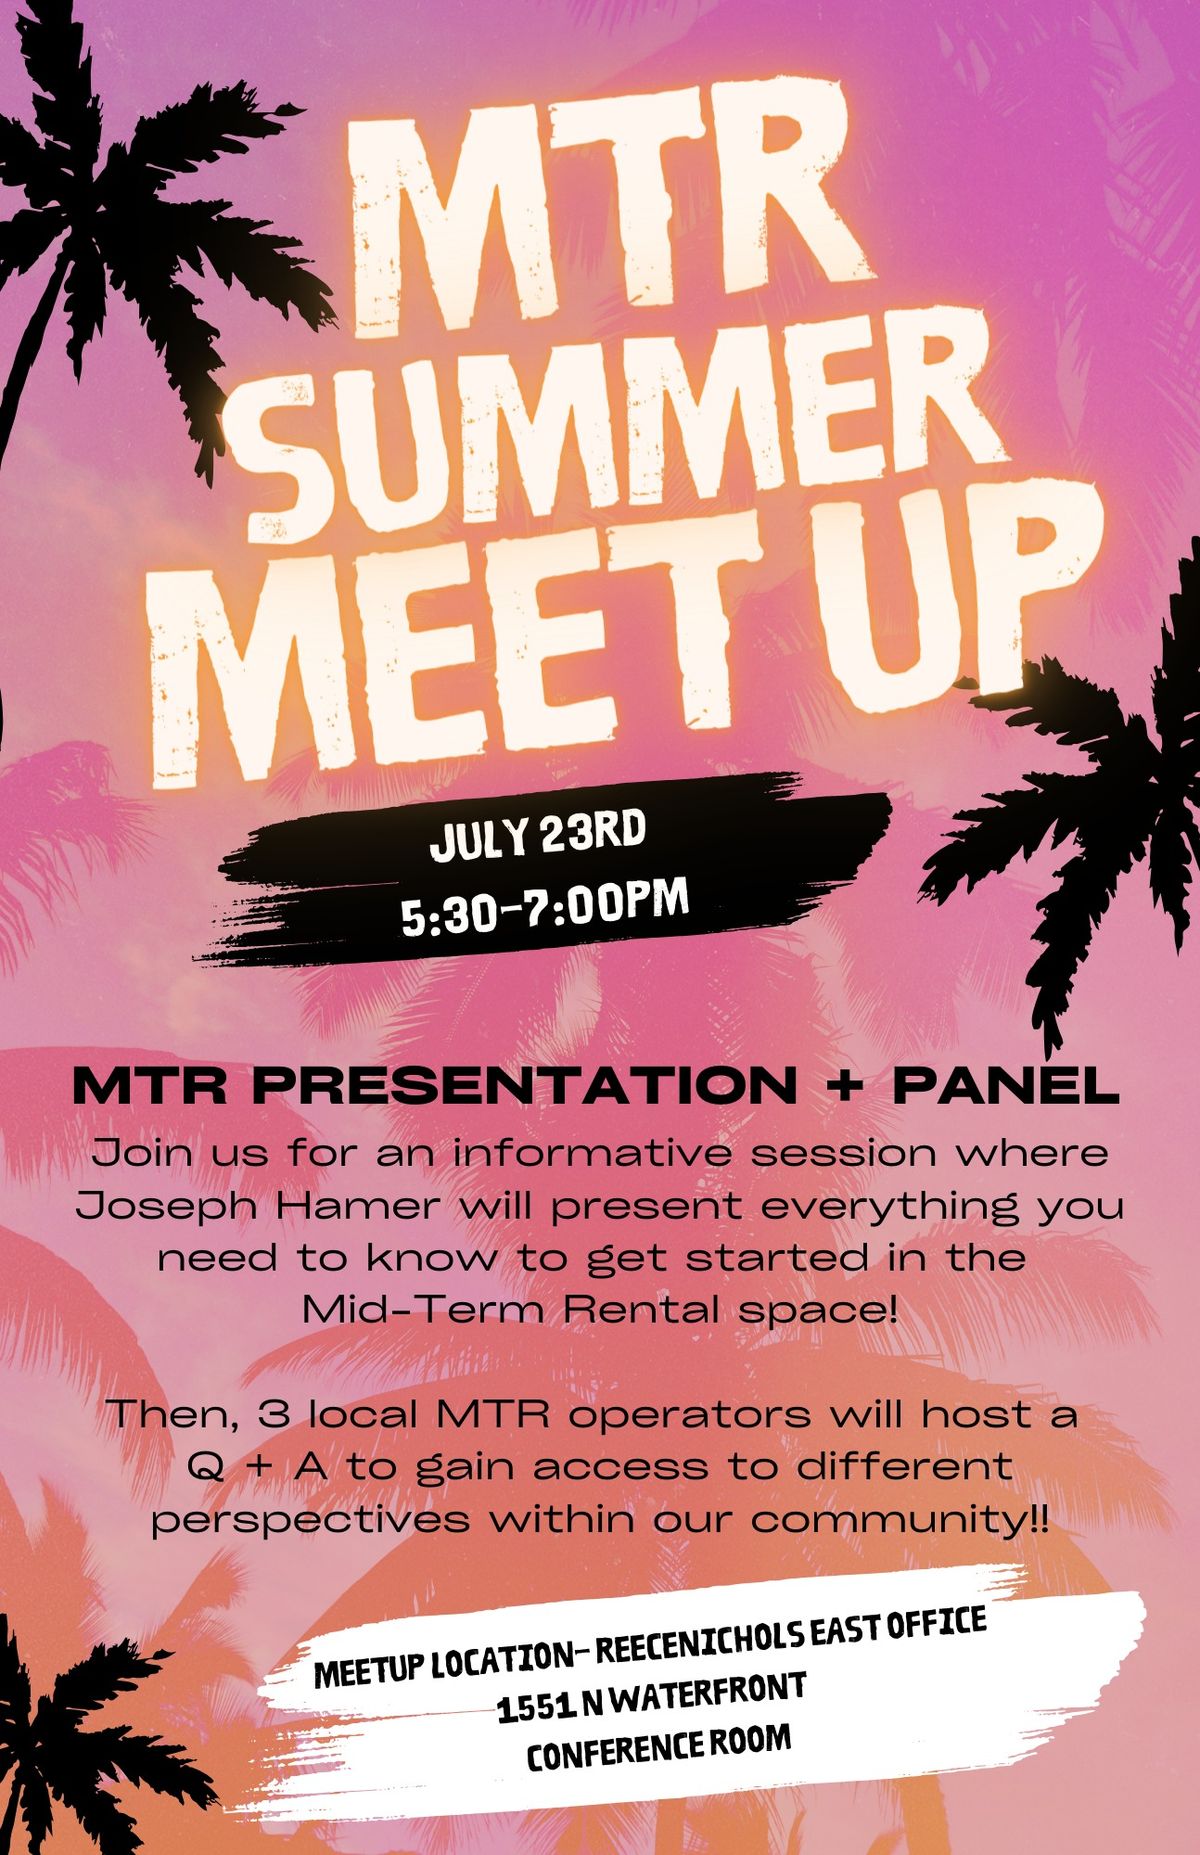 MTR Summer Meet Up - Presentation + Panel